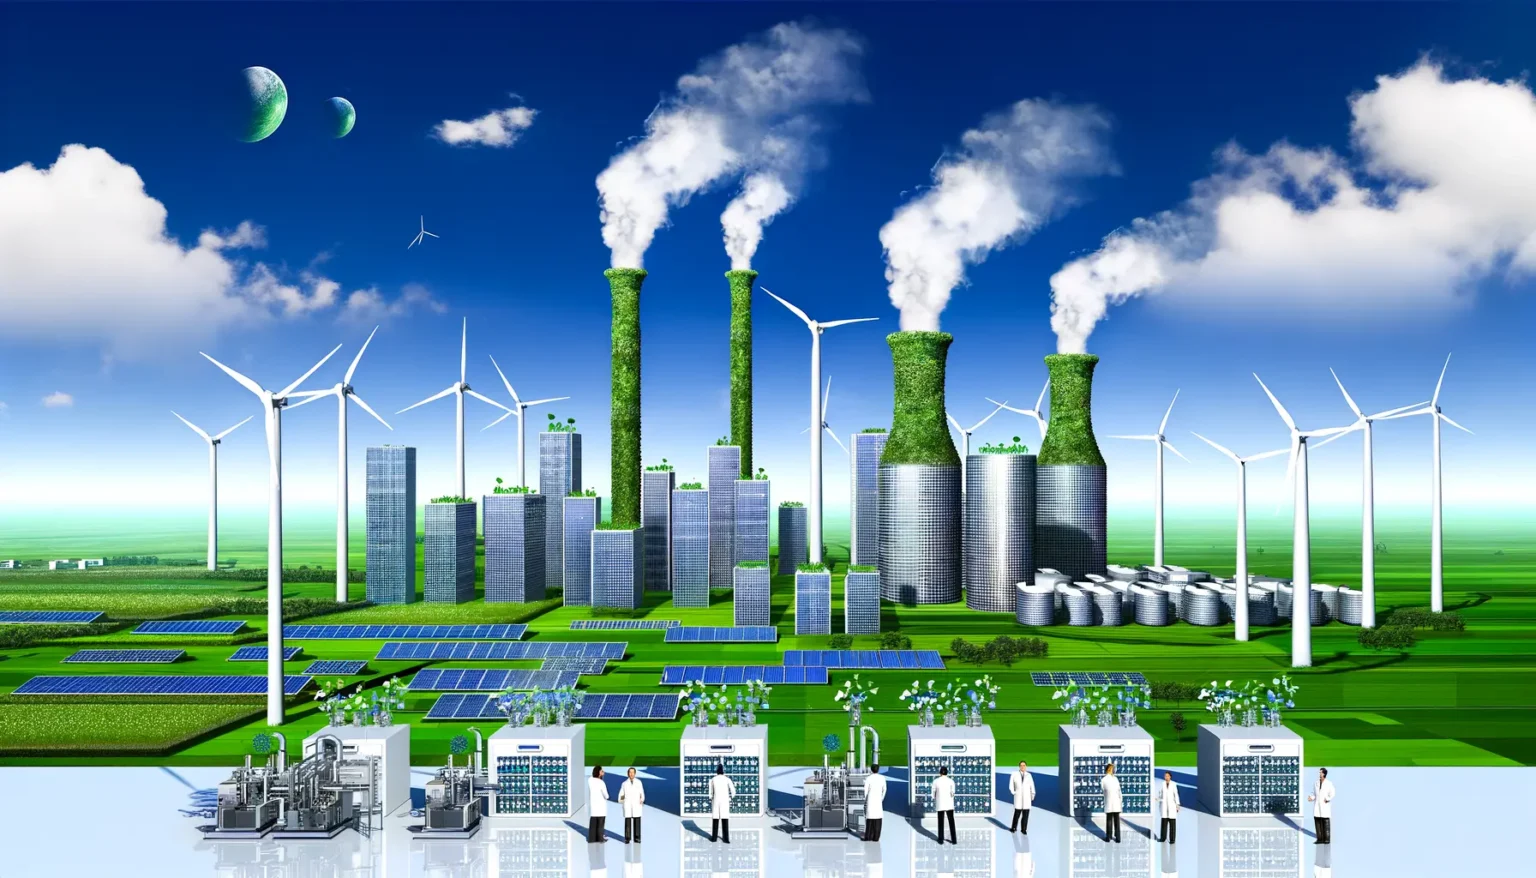 Eine futuristische Darstellung eines nachhaltigen Energieparks mit Windkraftanlagen, Solarpaneelen, grünen Hochhäusern mit Pflanzenbewuchs und industriellen Anlagen. Im Hintergrund sieht man eine saubere, grüne Landschaft unter blauem Himmel mit zwei Monden. Im Vordergrund gibt es Wissenschaftler, die an verschiedenen technologischen Stationen arbeiten.